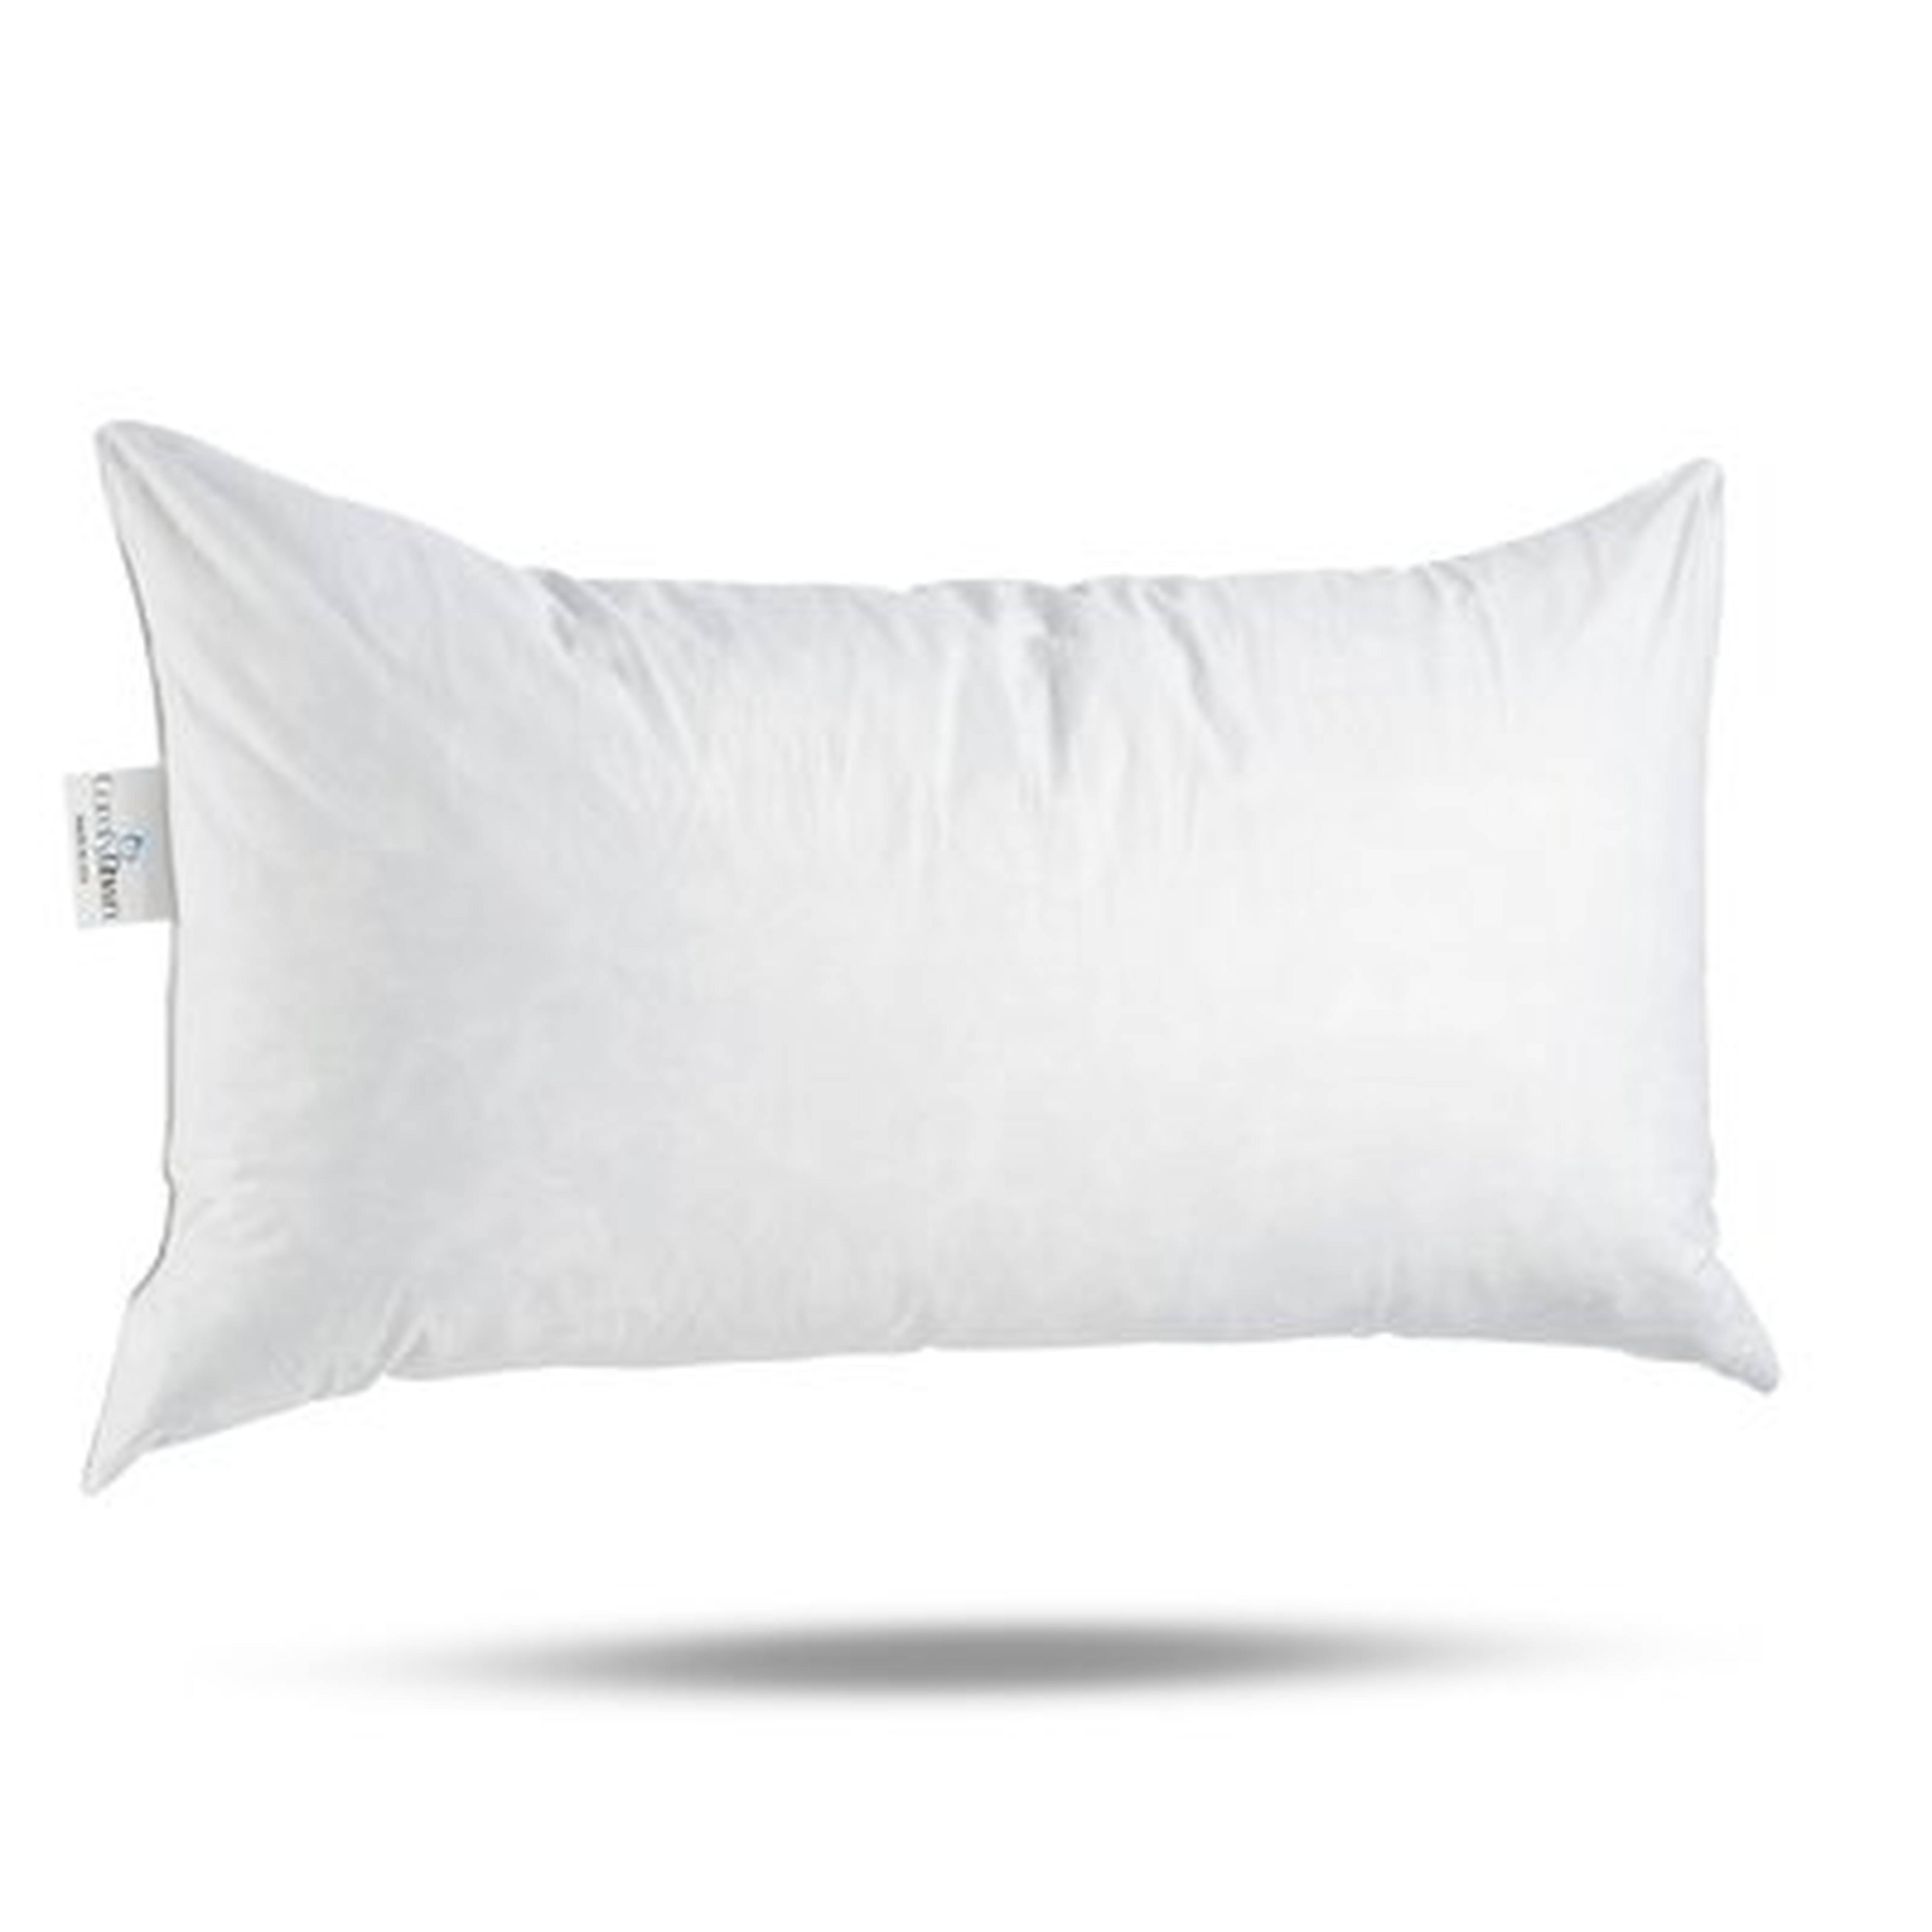 Edinburgh Pillow Insert - Wayfair